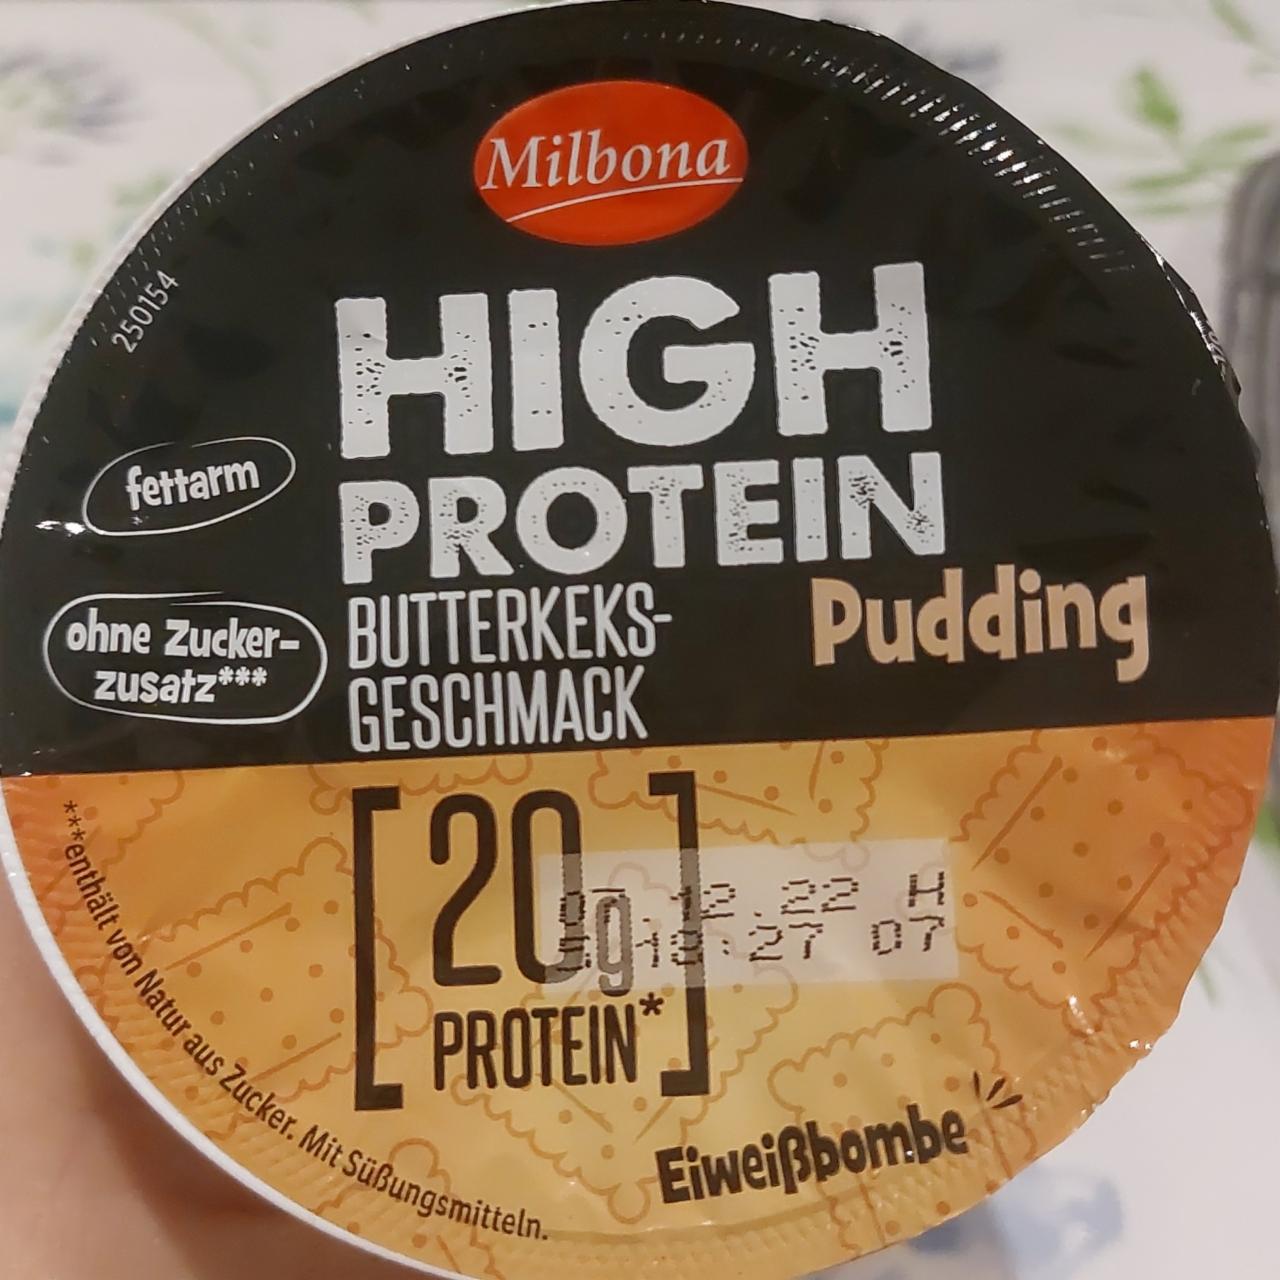 Fotografie - High protein pudding Butterkeks geschmack Milbona